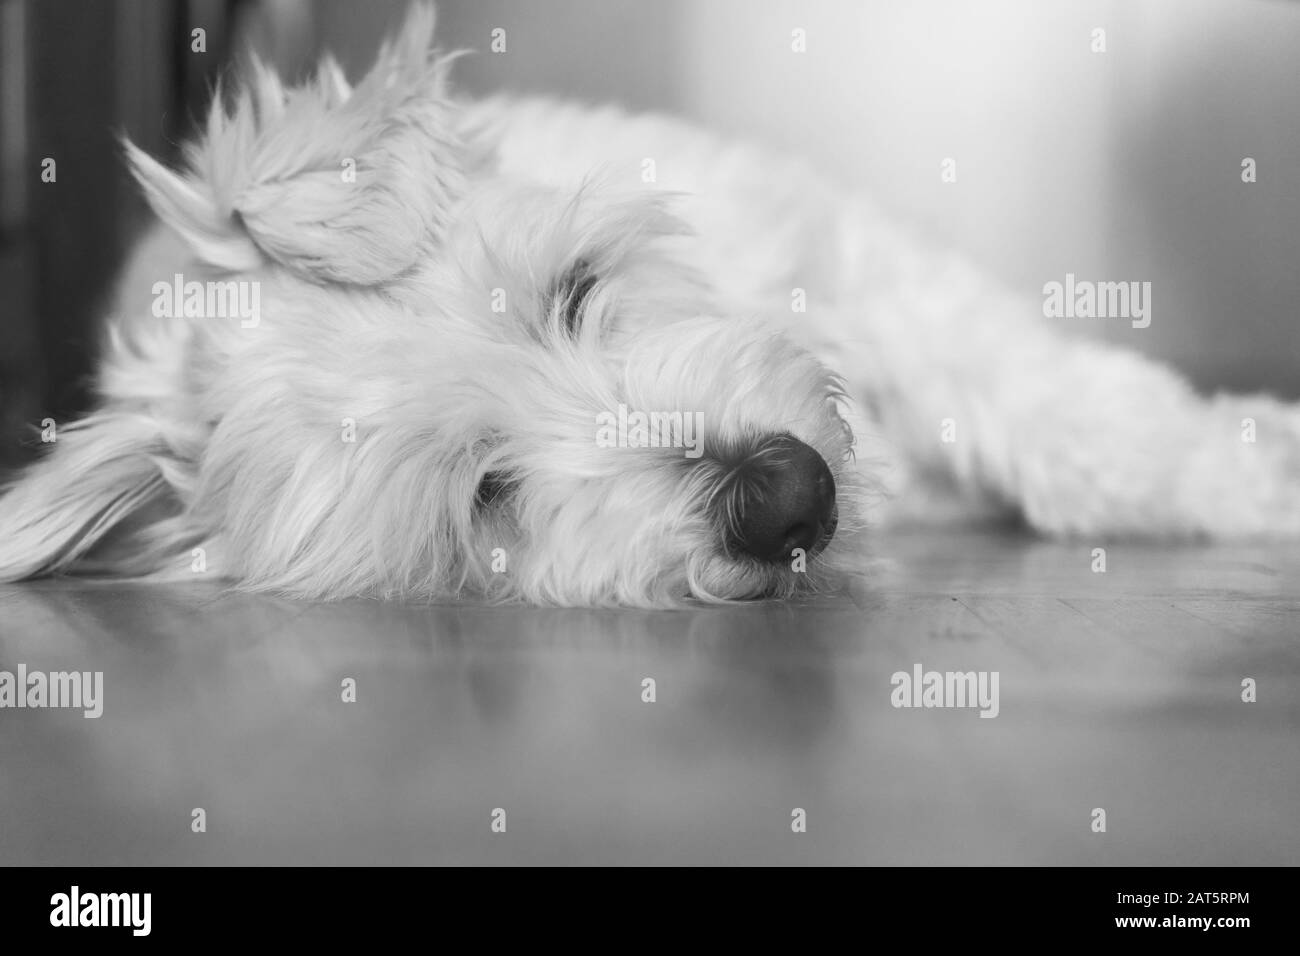 El retrato en blanco y negro del perro pastor catalán de color blanco adoptado descansa sobre el parquet en casa Foto de stock